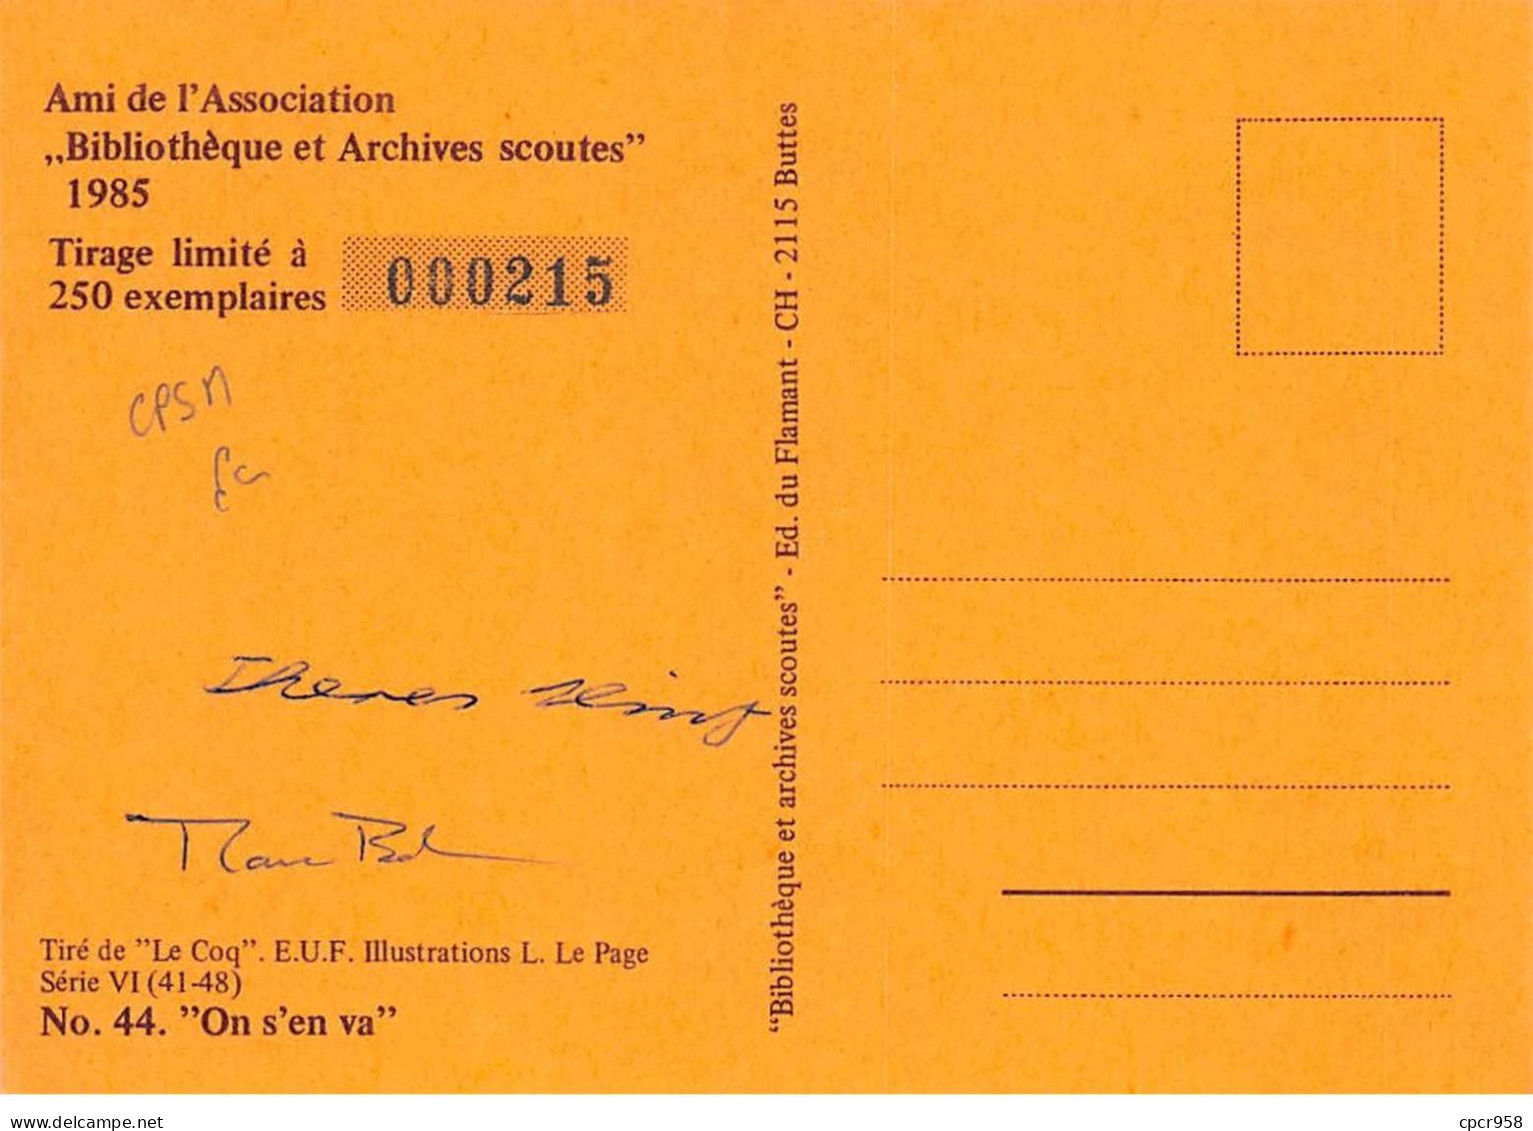 SCOUTISME - SAN36109 - Ami De L'Association Bibliothèque Et Archives Scoutes 1985 - N°44 "On S'en Va" - CPSM 15x10 Cm - Movimiento Scout